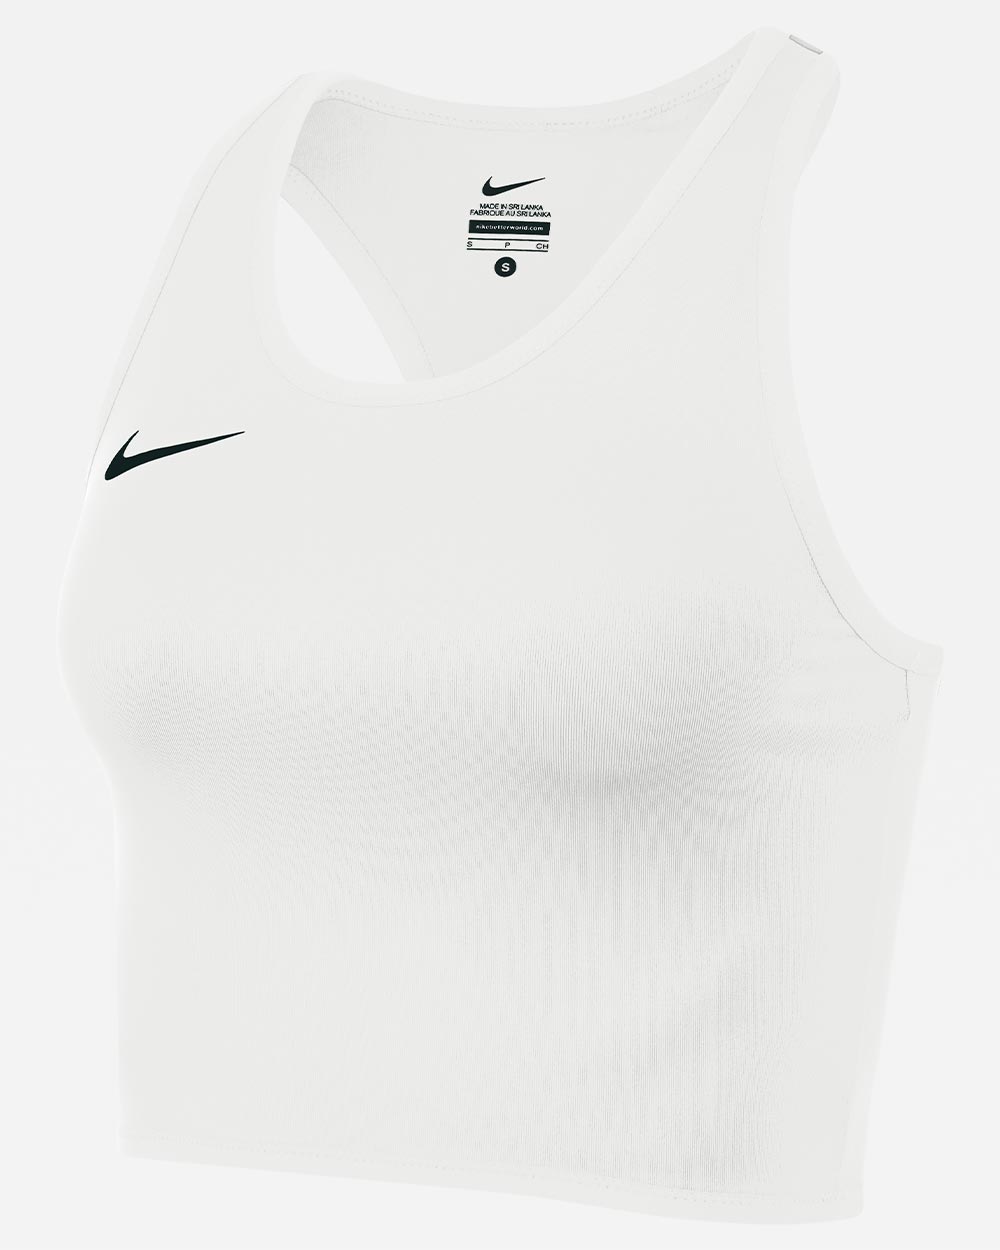 Camiseta sin mangas de running Nike Stock Blanco para Mujeres - NT0312-100